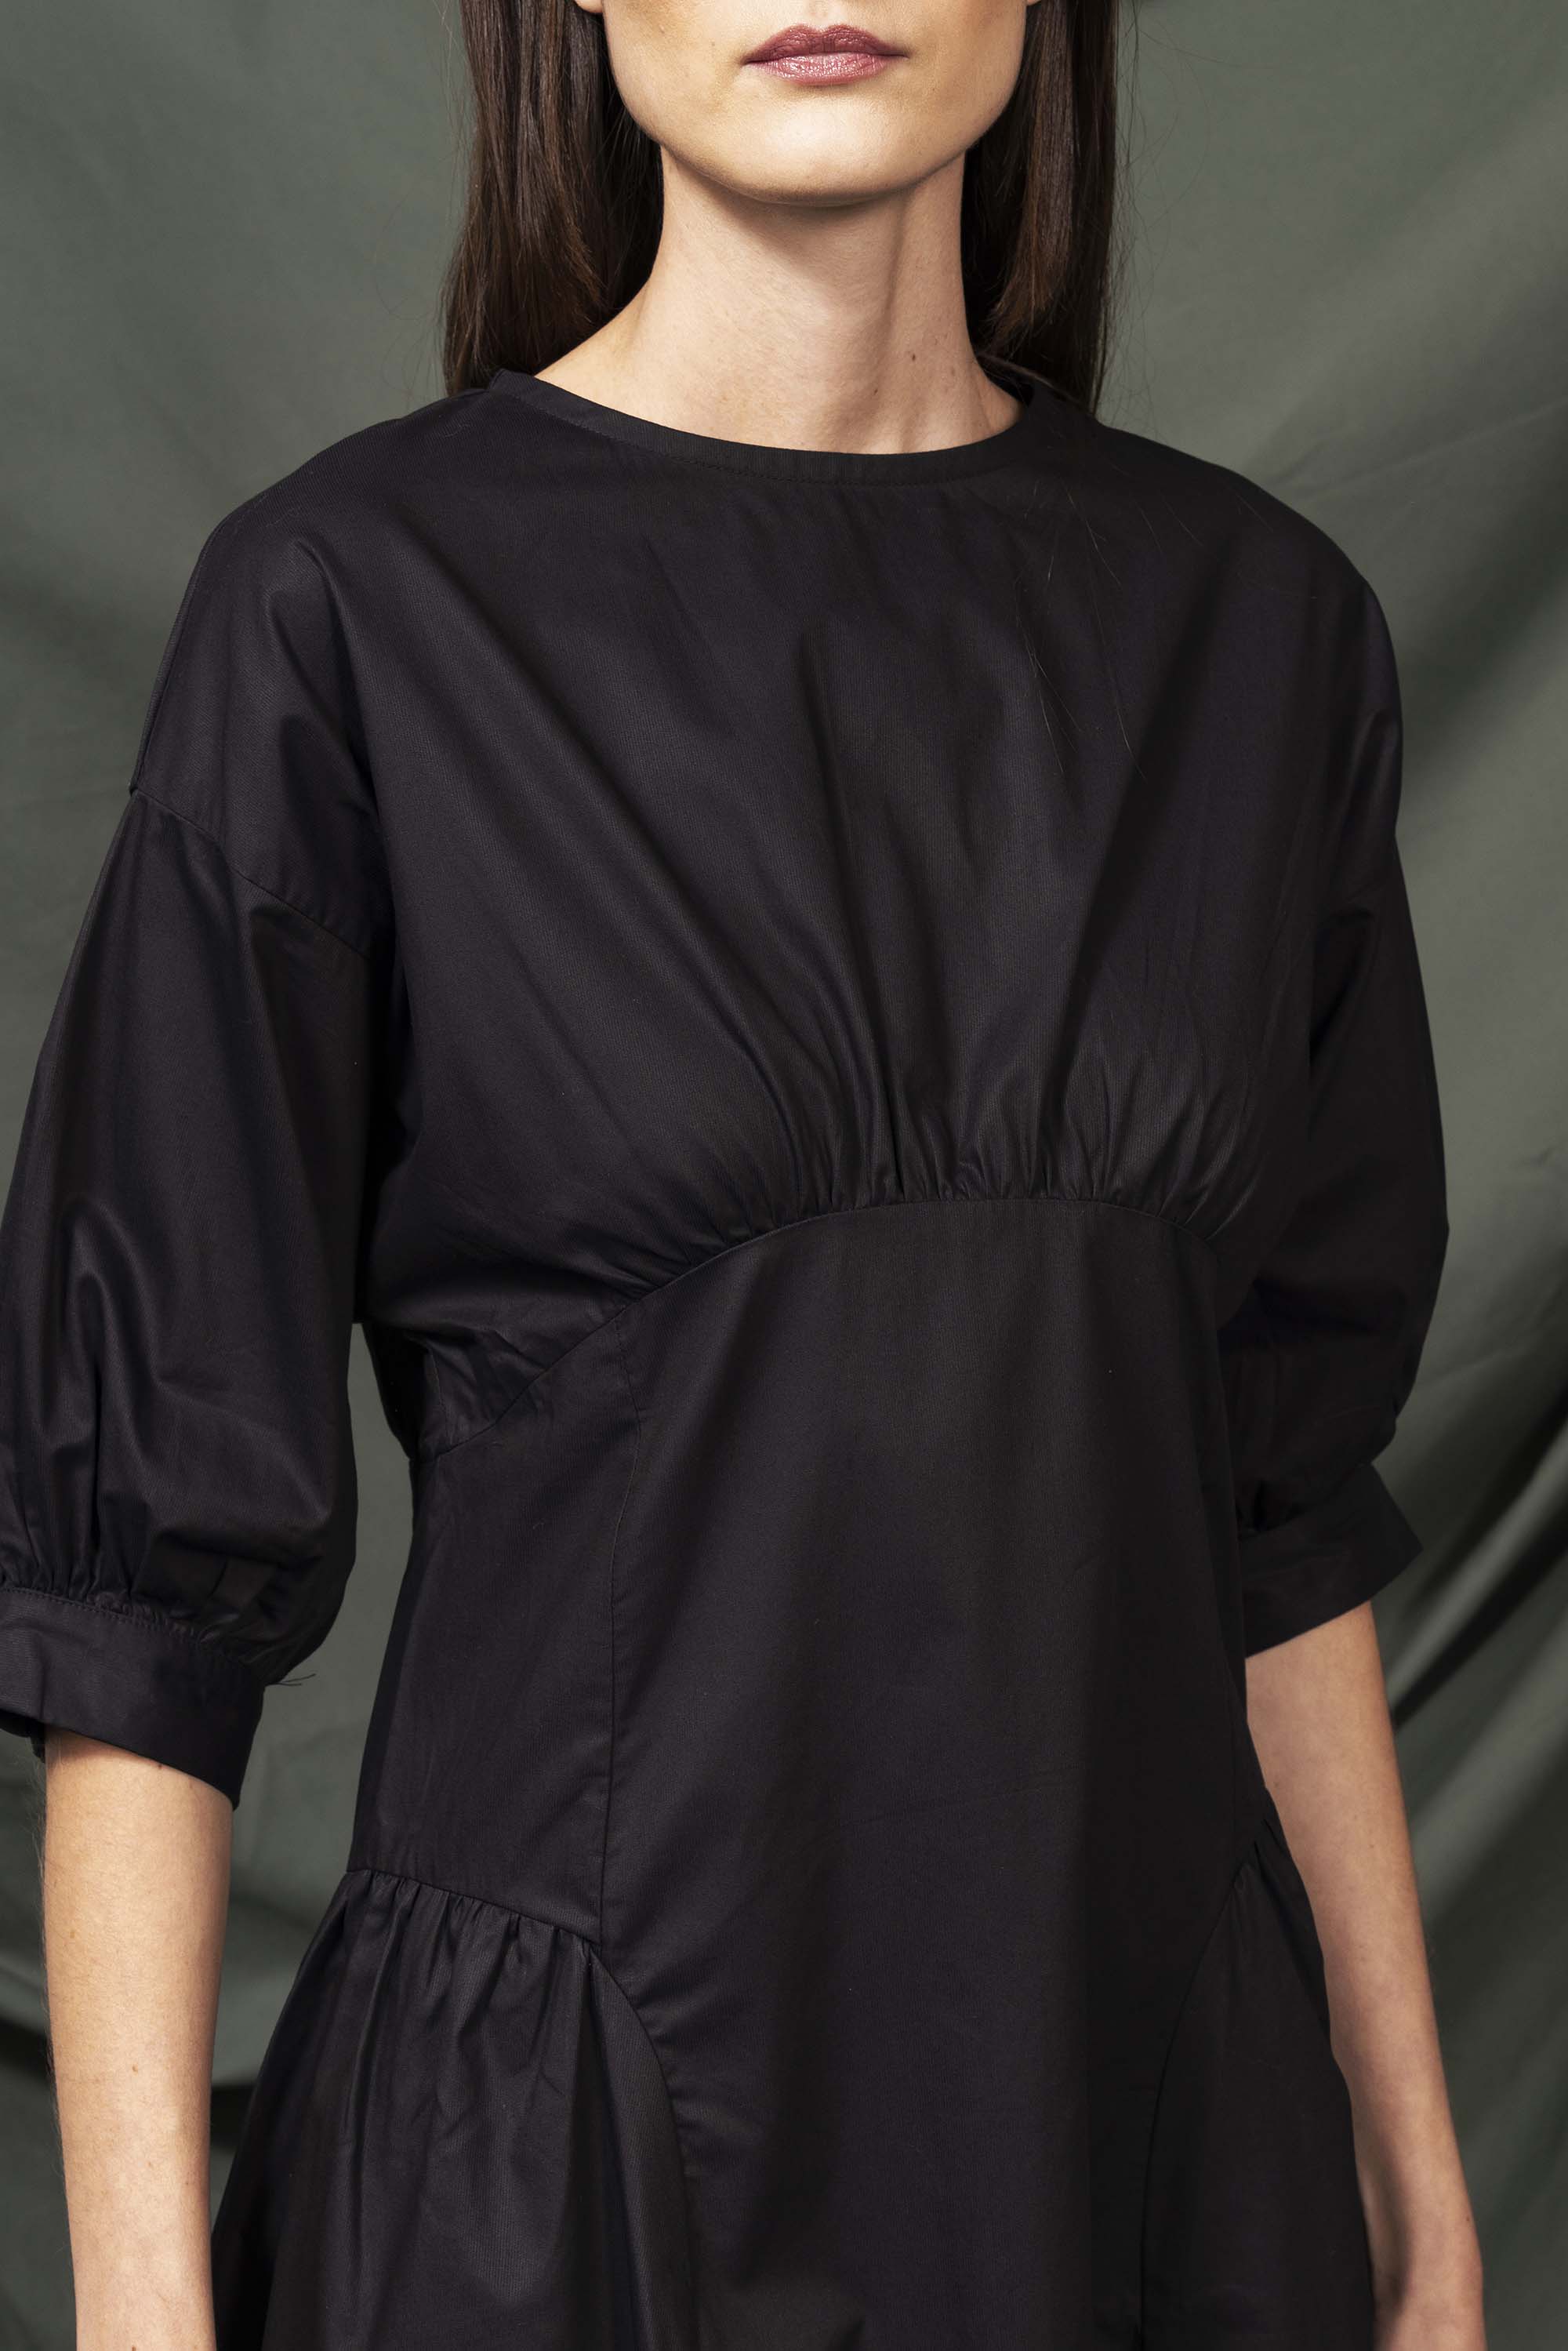 Robe Jirafa Noir robes femme faciles à vivre et agréables à porter